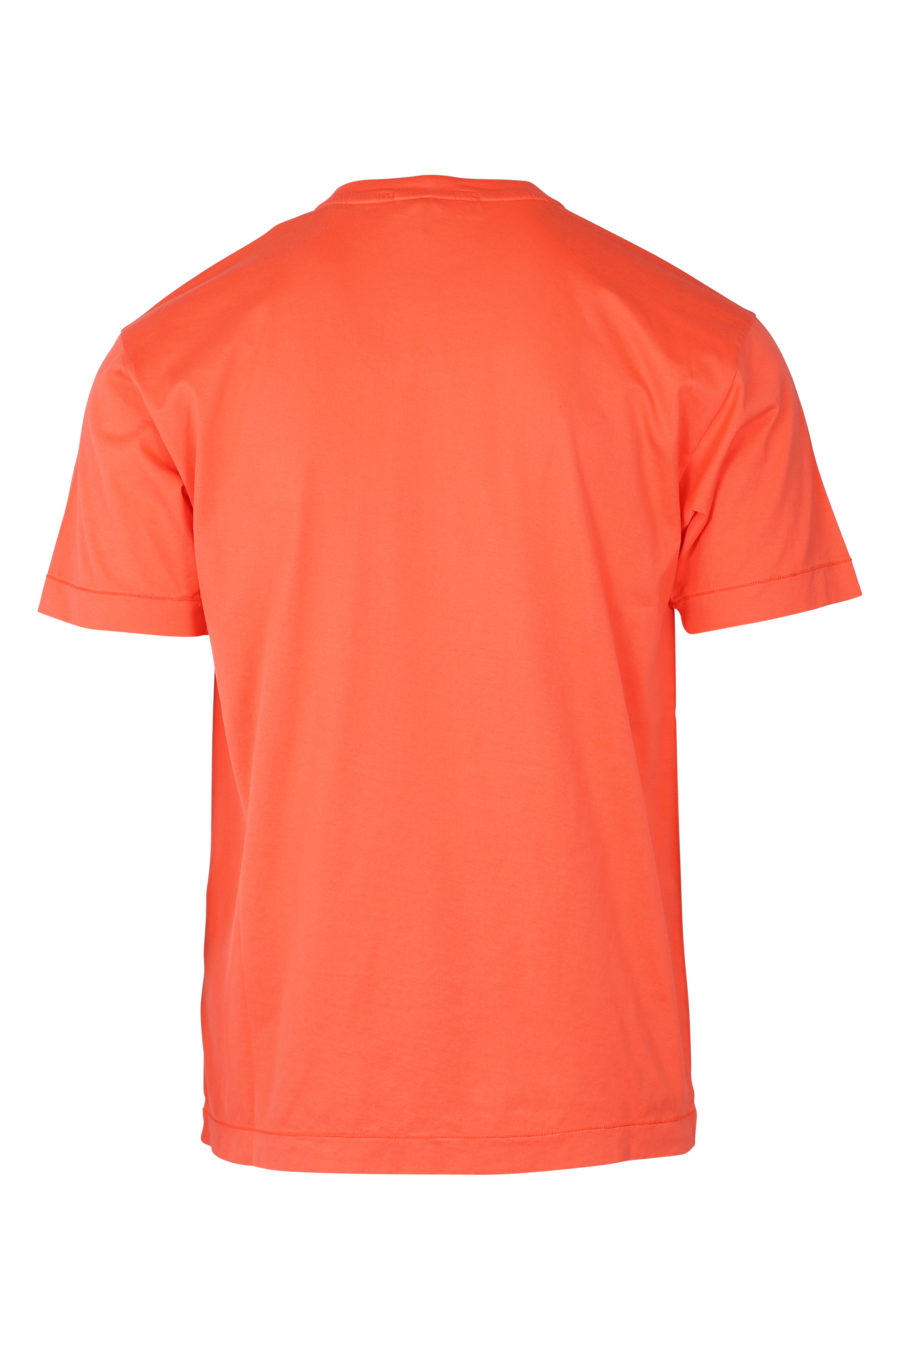 Camiseta de color coral con parche - IMG 9361